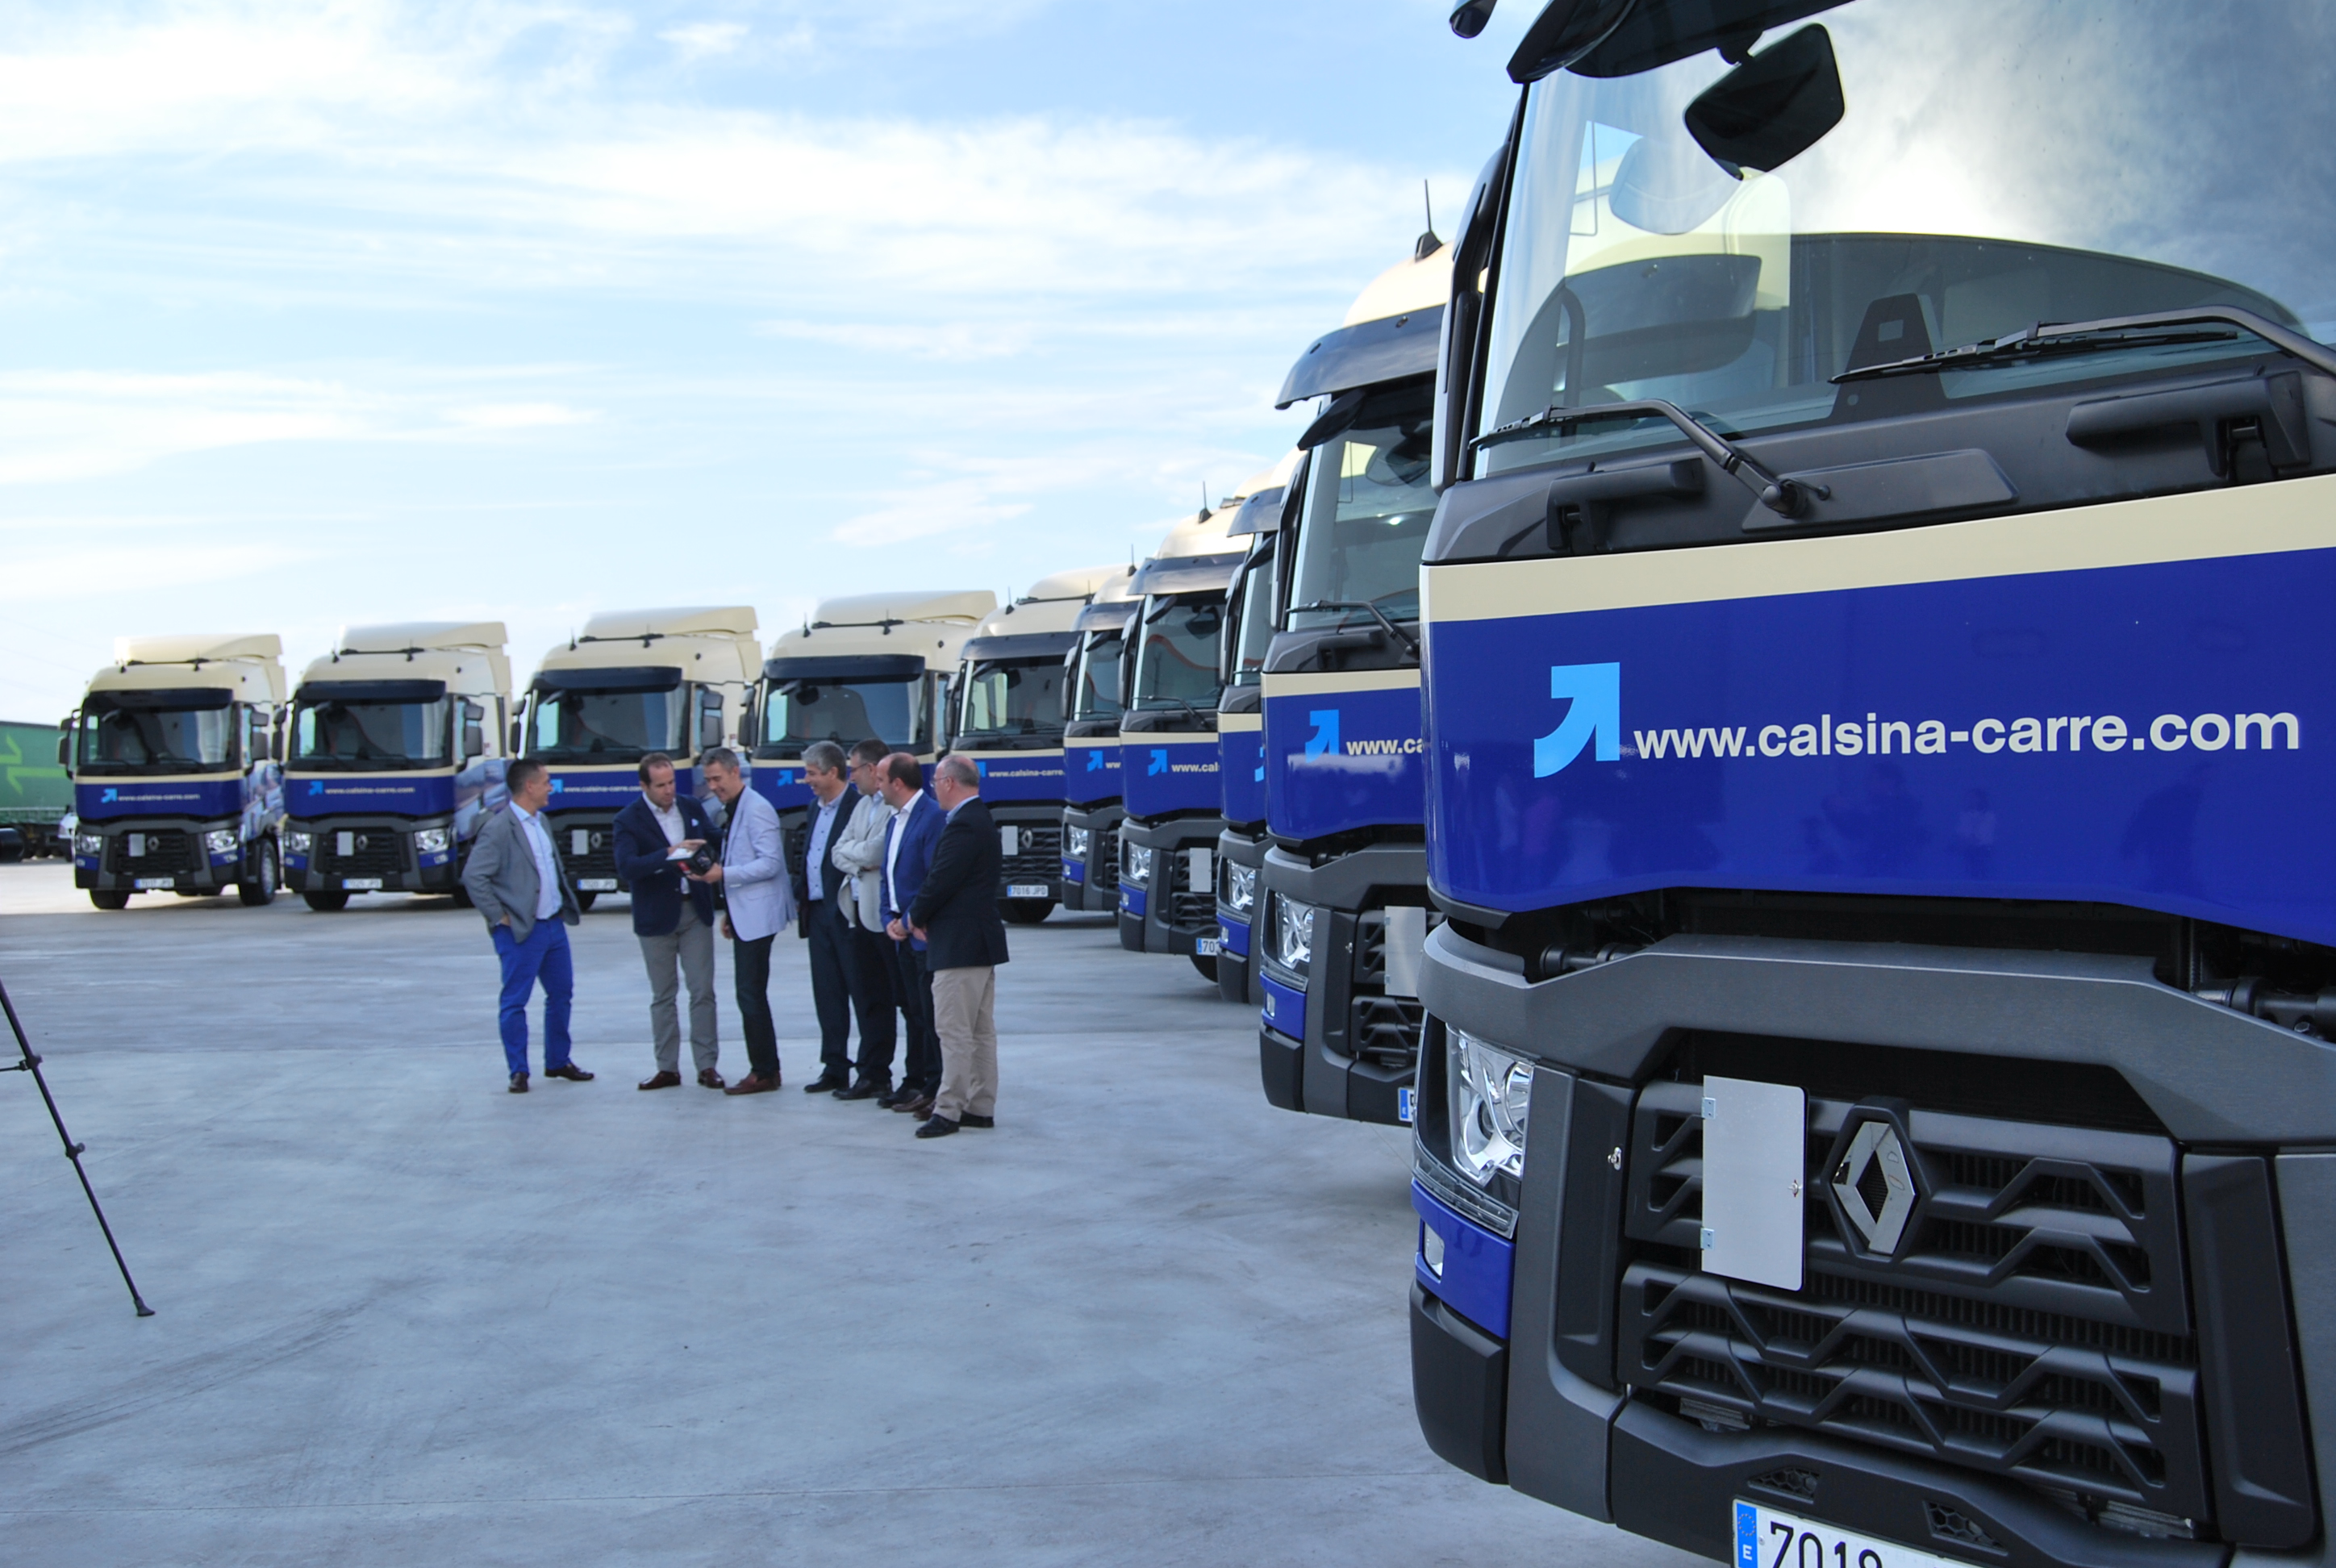 Calsina Carré Renault Trucks Motor Tarrega, deliver